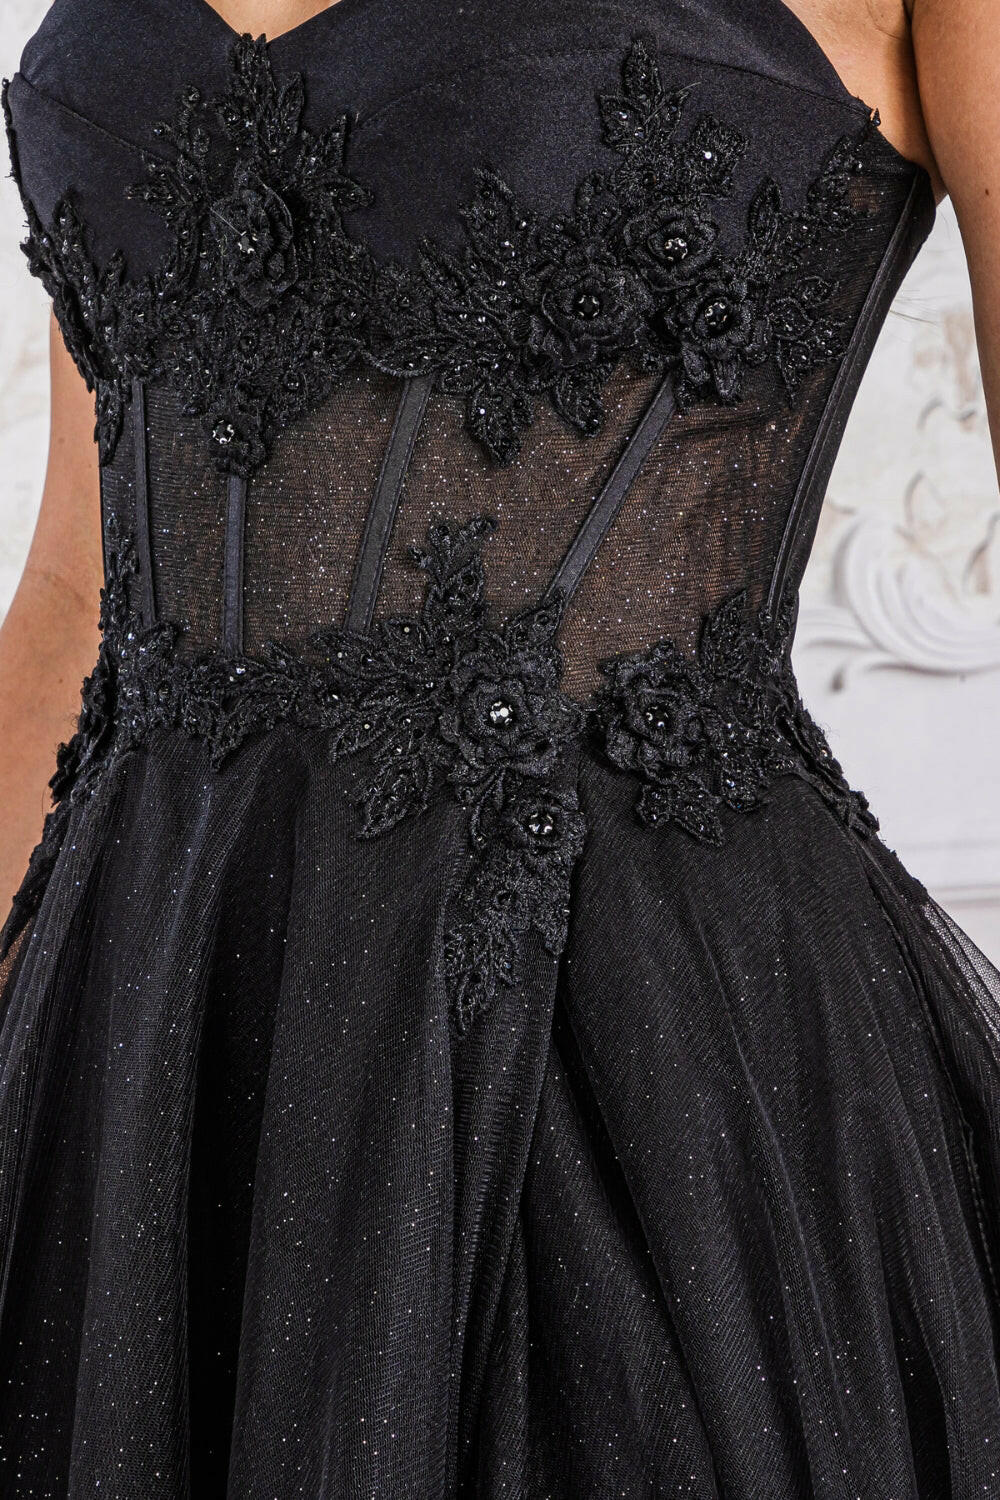 Strapless Embroidered Bodice Side SlitTulle Skirt Long Prom Dress AC7042-2